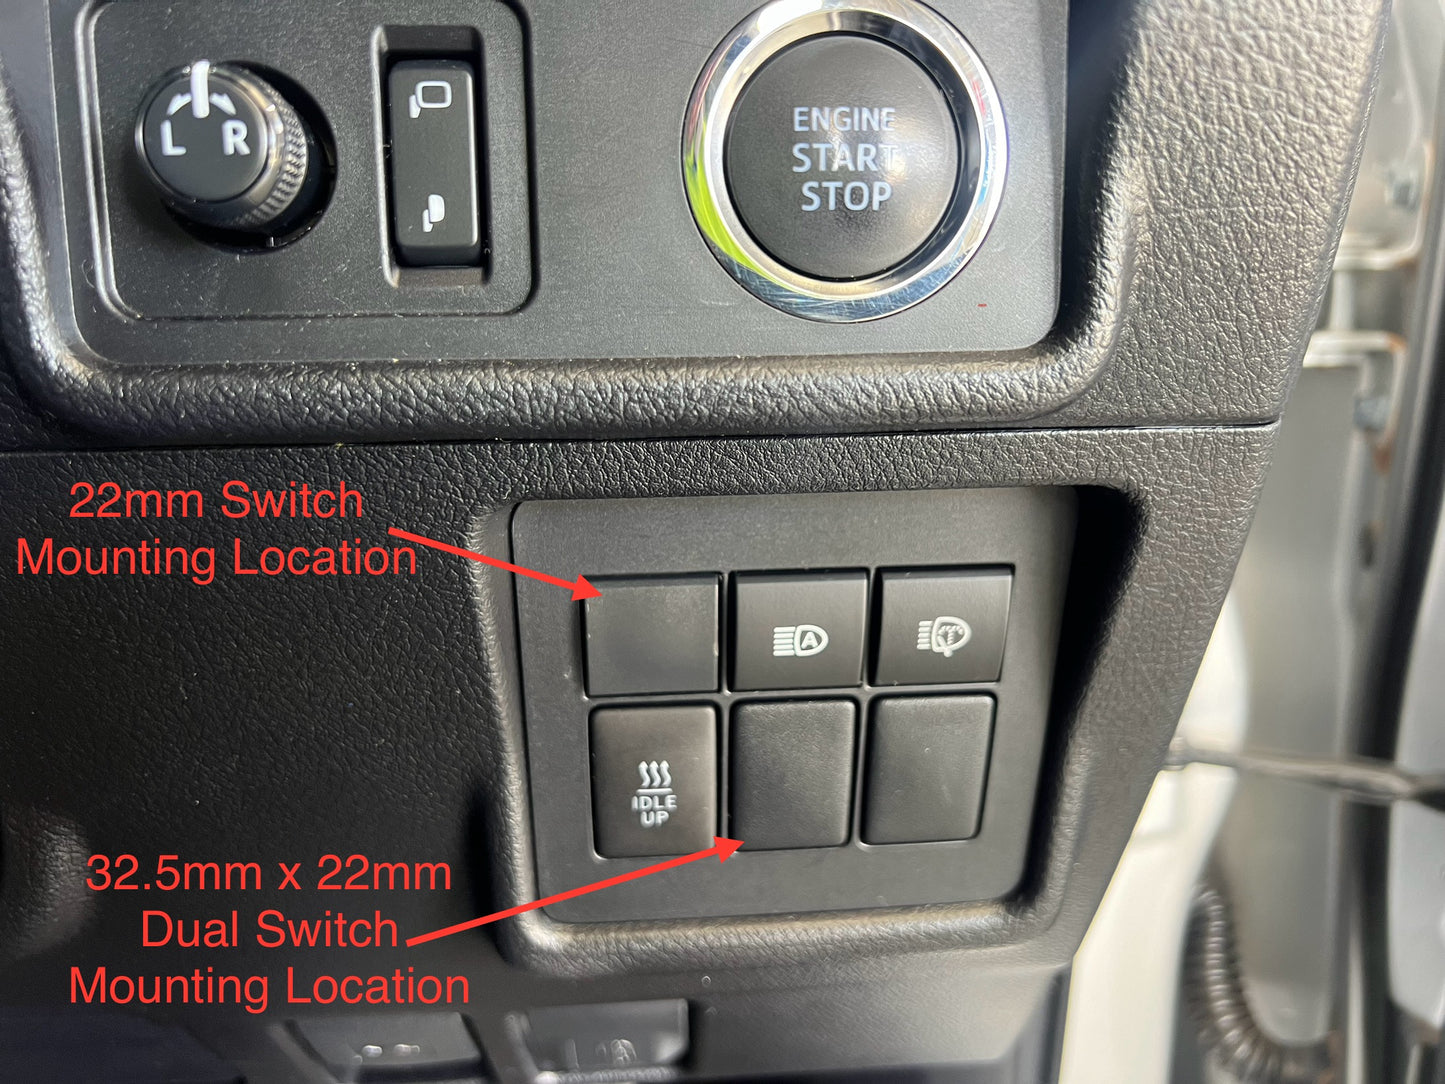 Toyota Prado 2018-2020 Plug and Play Front Camera Kit